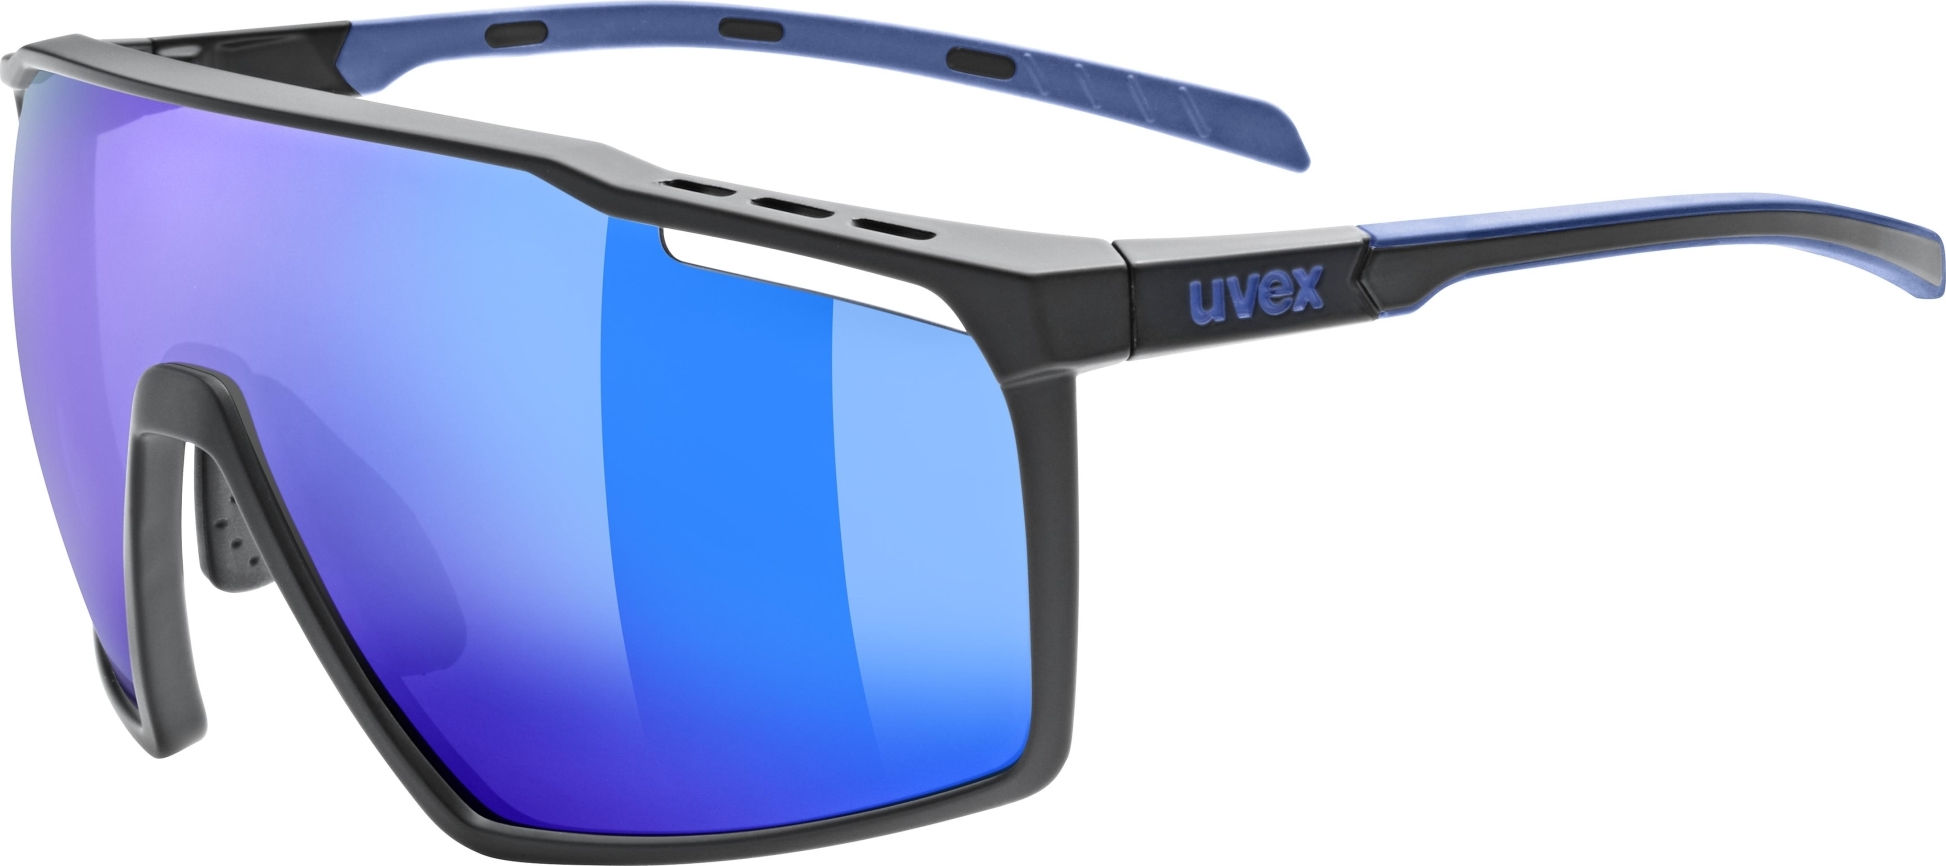 Sluneční brýle UVEX MTN Perform BL modročerné